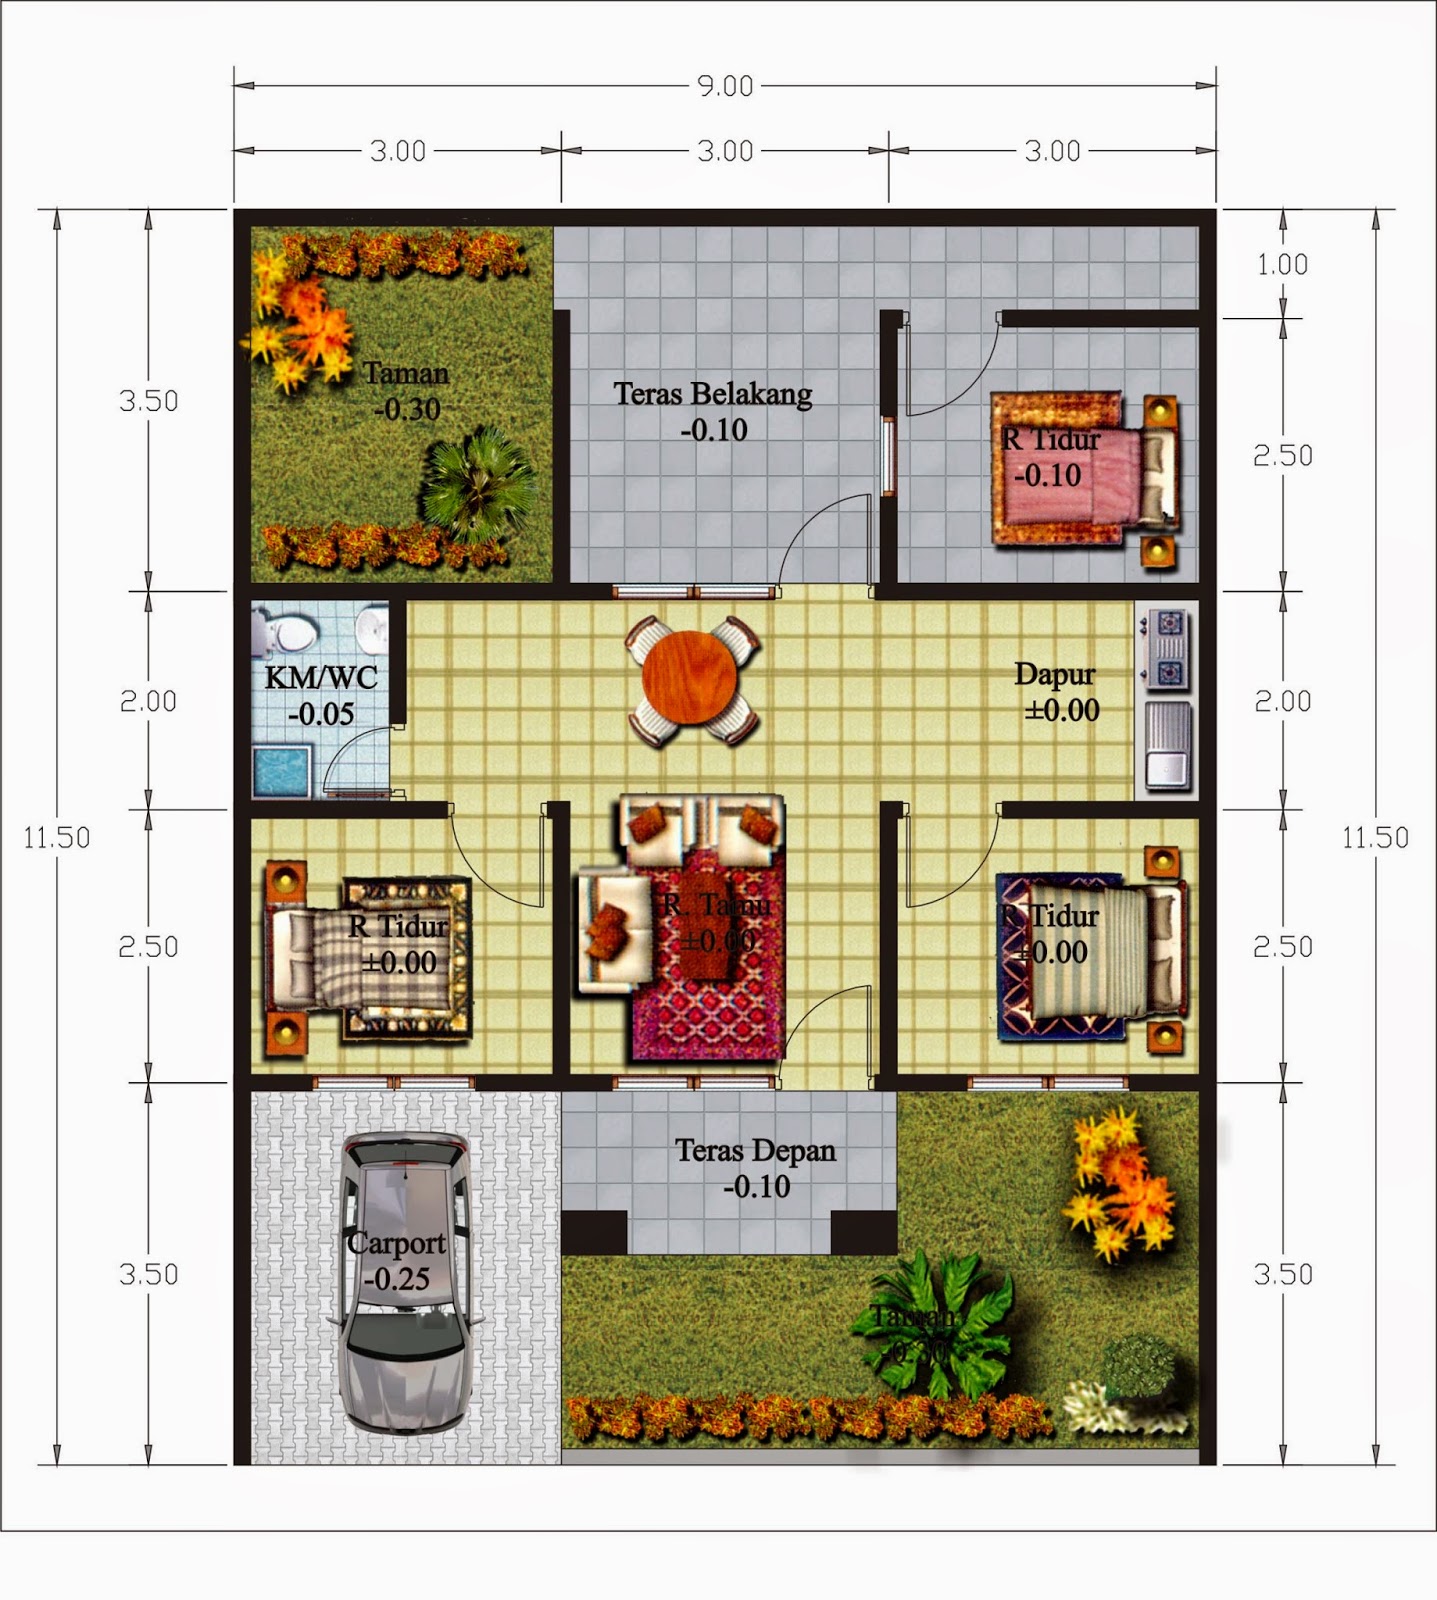 Denah Rumah Minimalis 1 Lantai Ukuran 10 X 15 Desain Rumah Minimalis